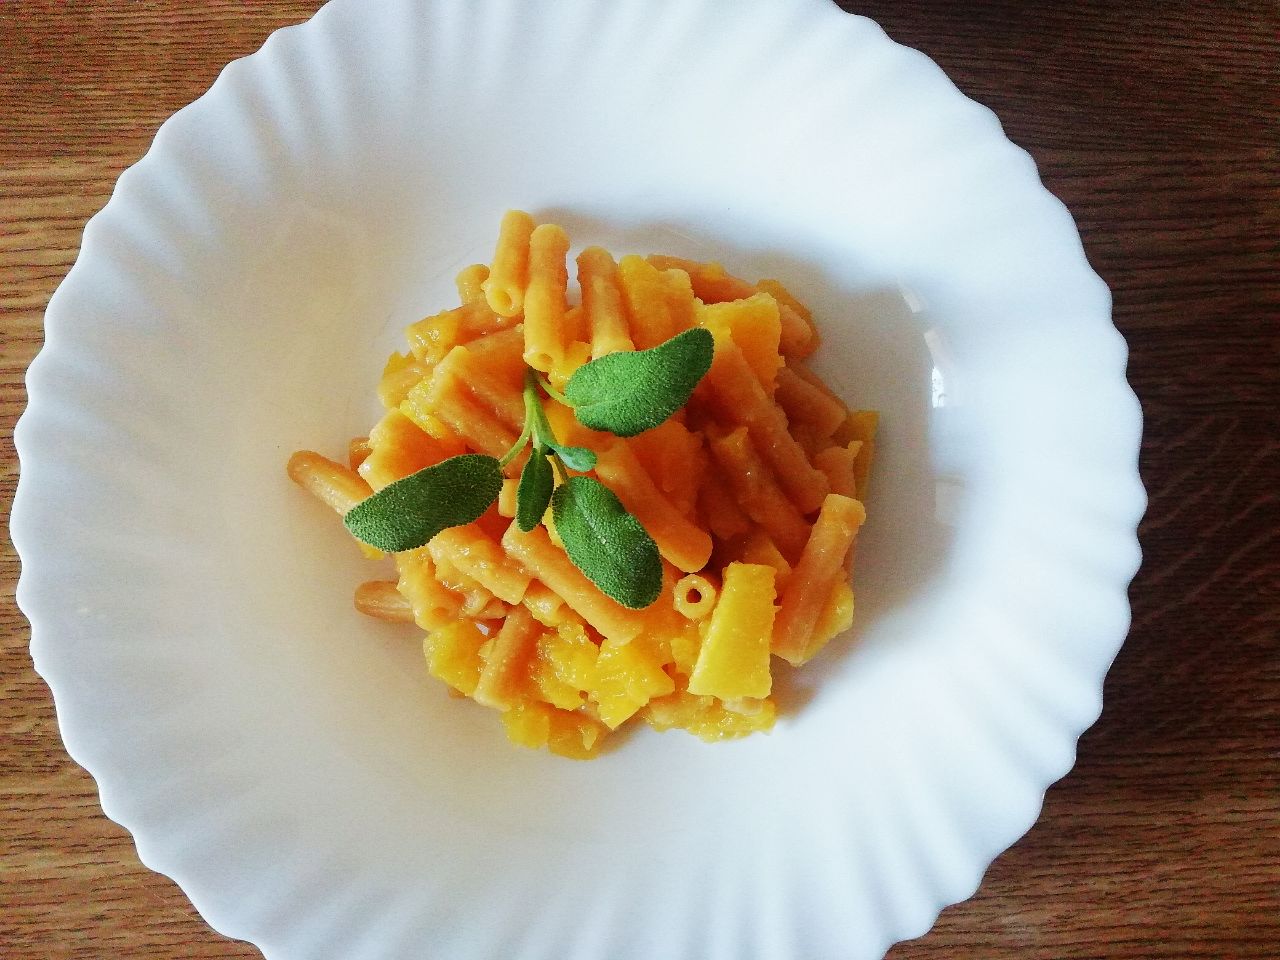 Primi piatti senza glutine: pasta di lenticchie rosse con zucca e salvia!